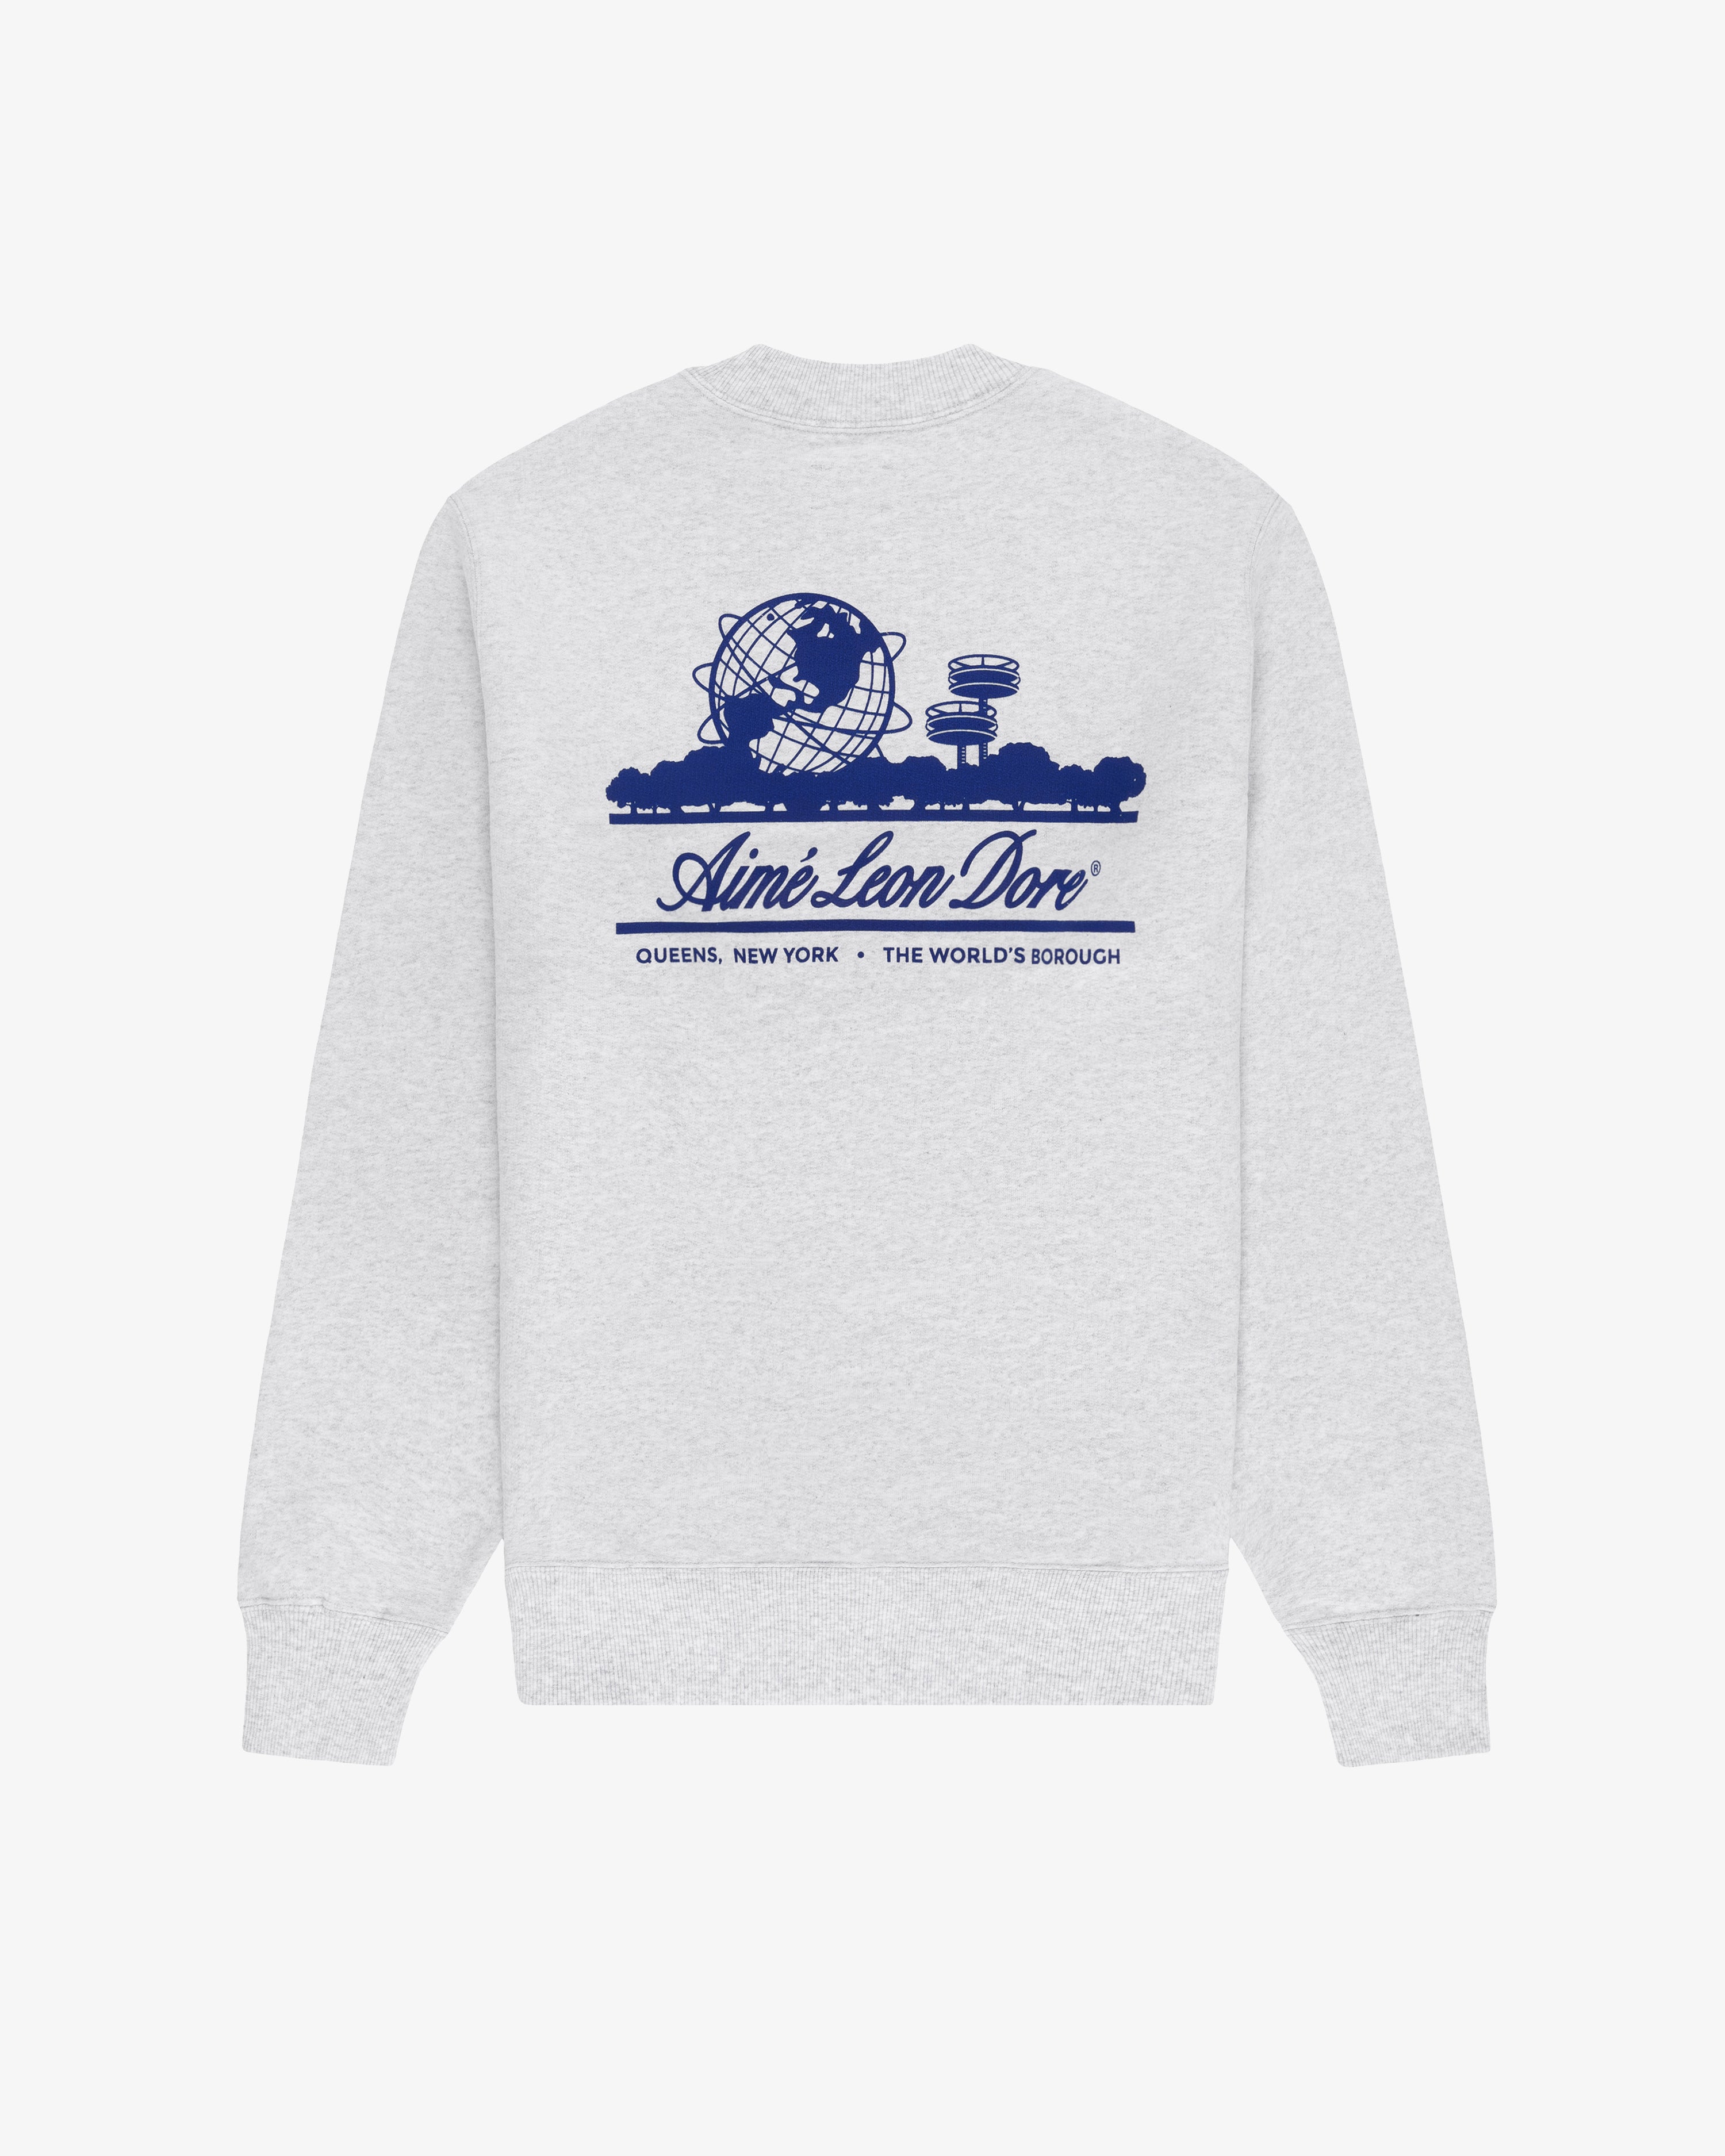 Unisphere  Crewneck  Sweatshirt